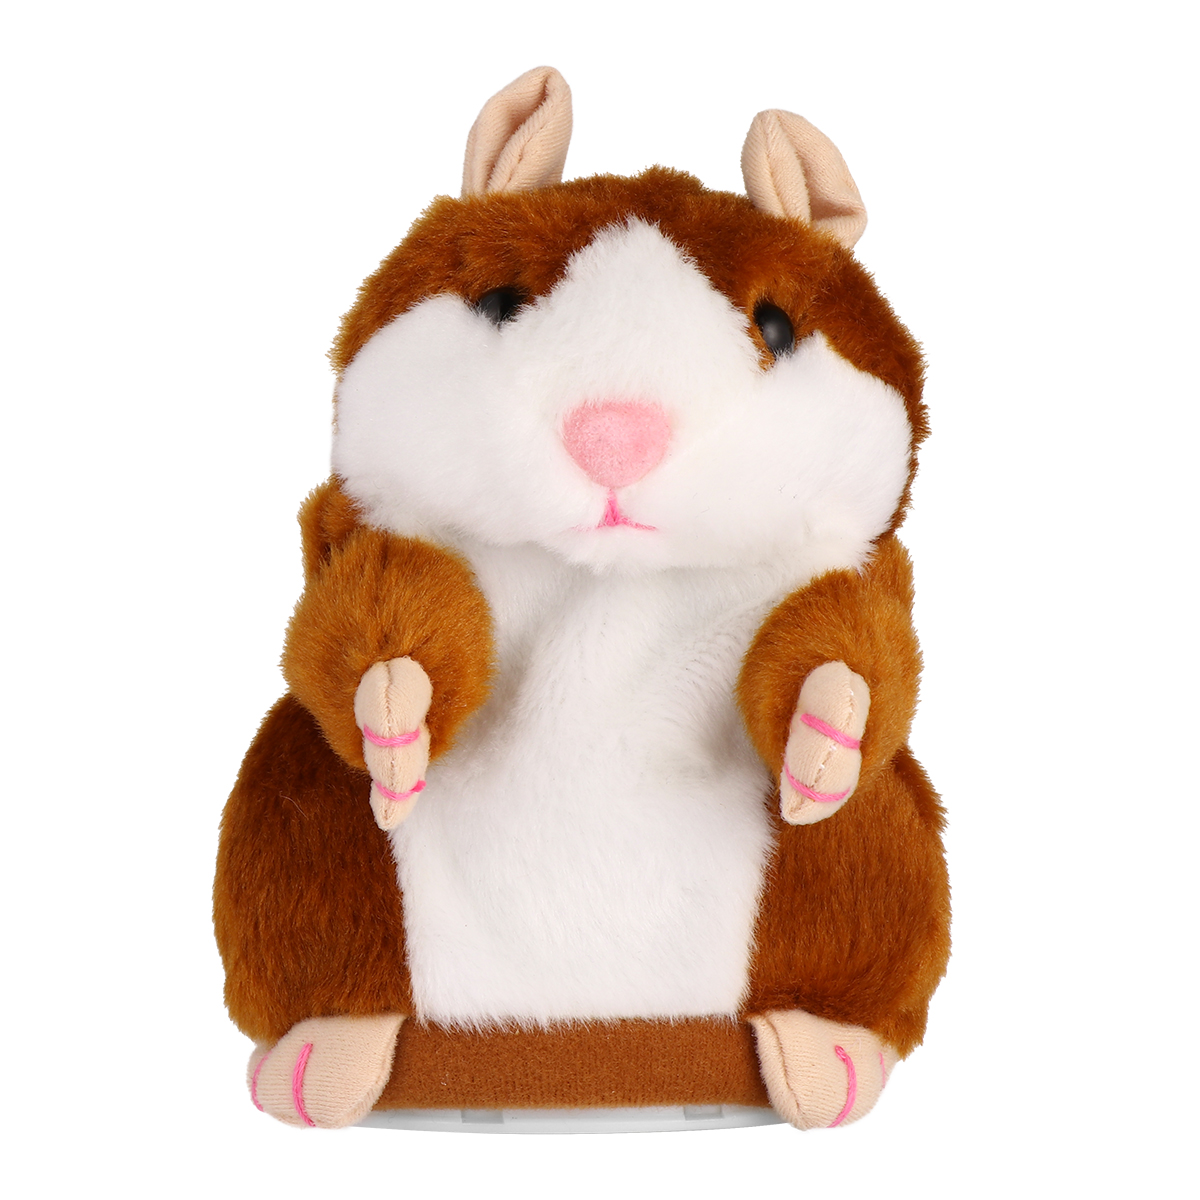 Купить говорящего хомяка. Adorable игрушка. Говорящий хомяк. 2 Gigant Toy Plush Hamster Berlin.